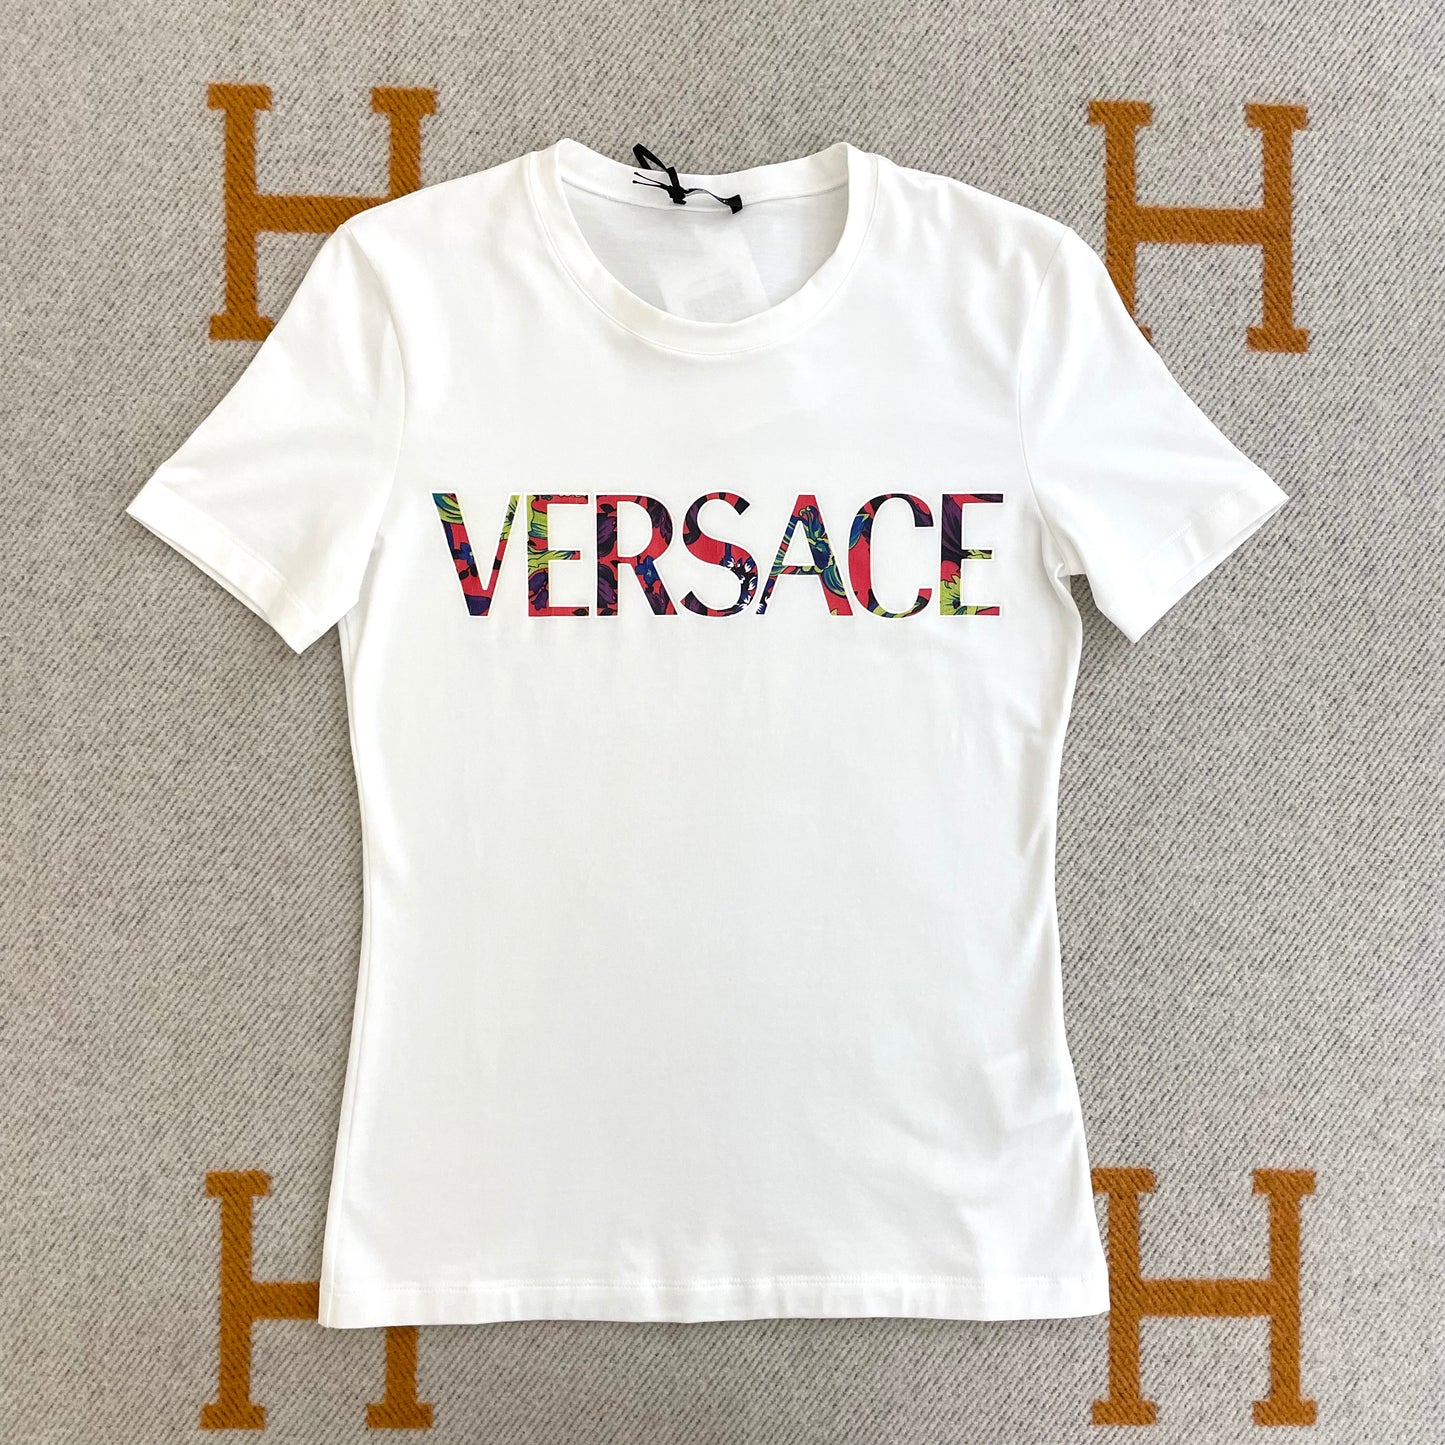 Versace Women's T-shirt